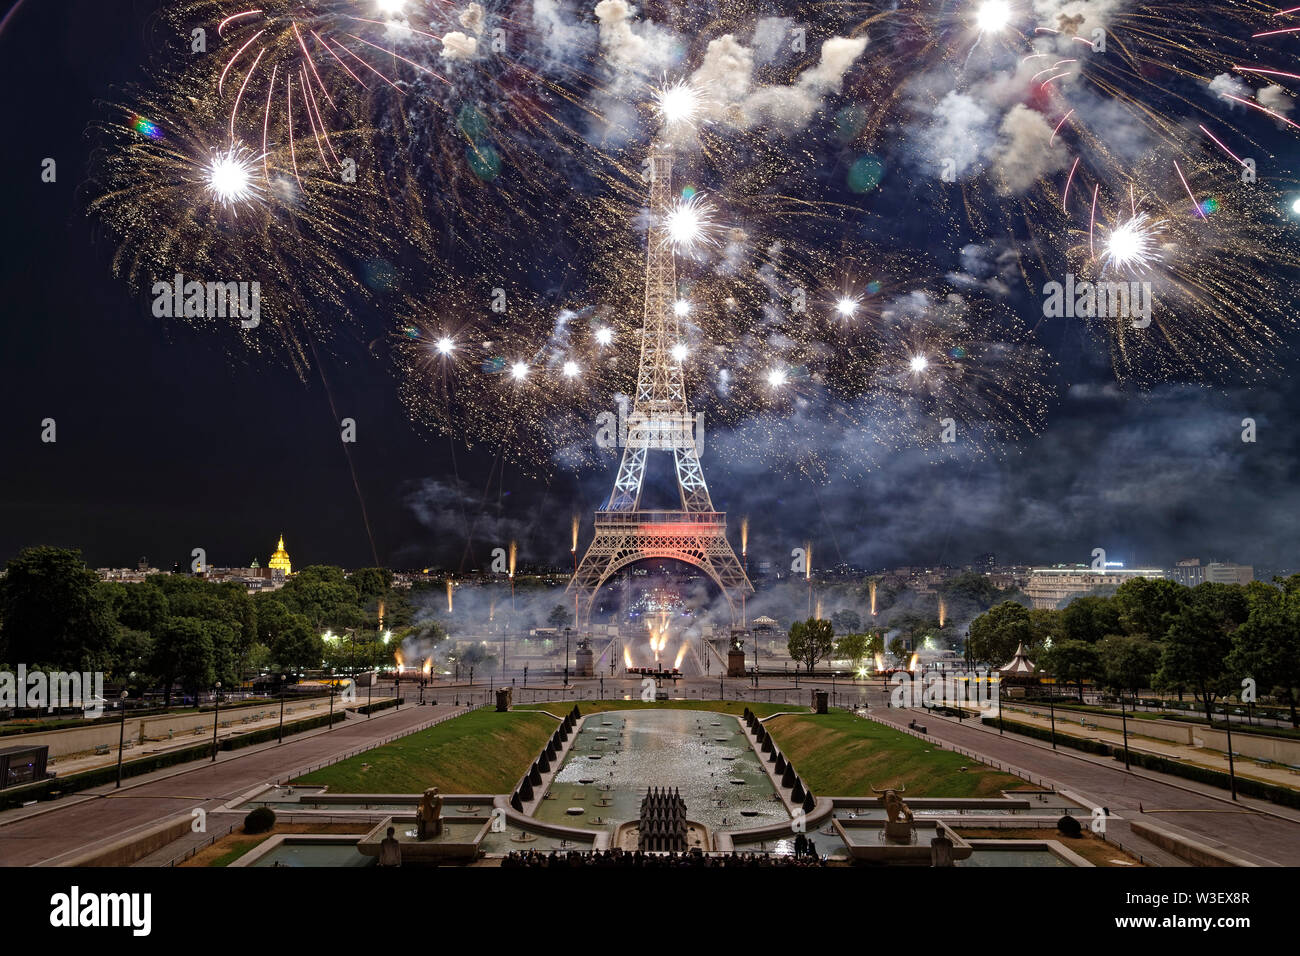 Paris, France. 14 juillet, 2019. Scène de nuit de feux d'artifice à la Tour Eiffel, dans la capitale française Paris, 14 juillet, 2019. Banque D'Images